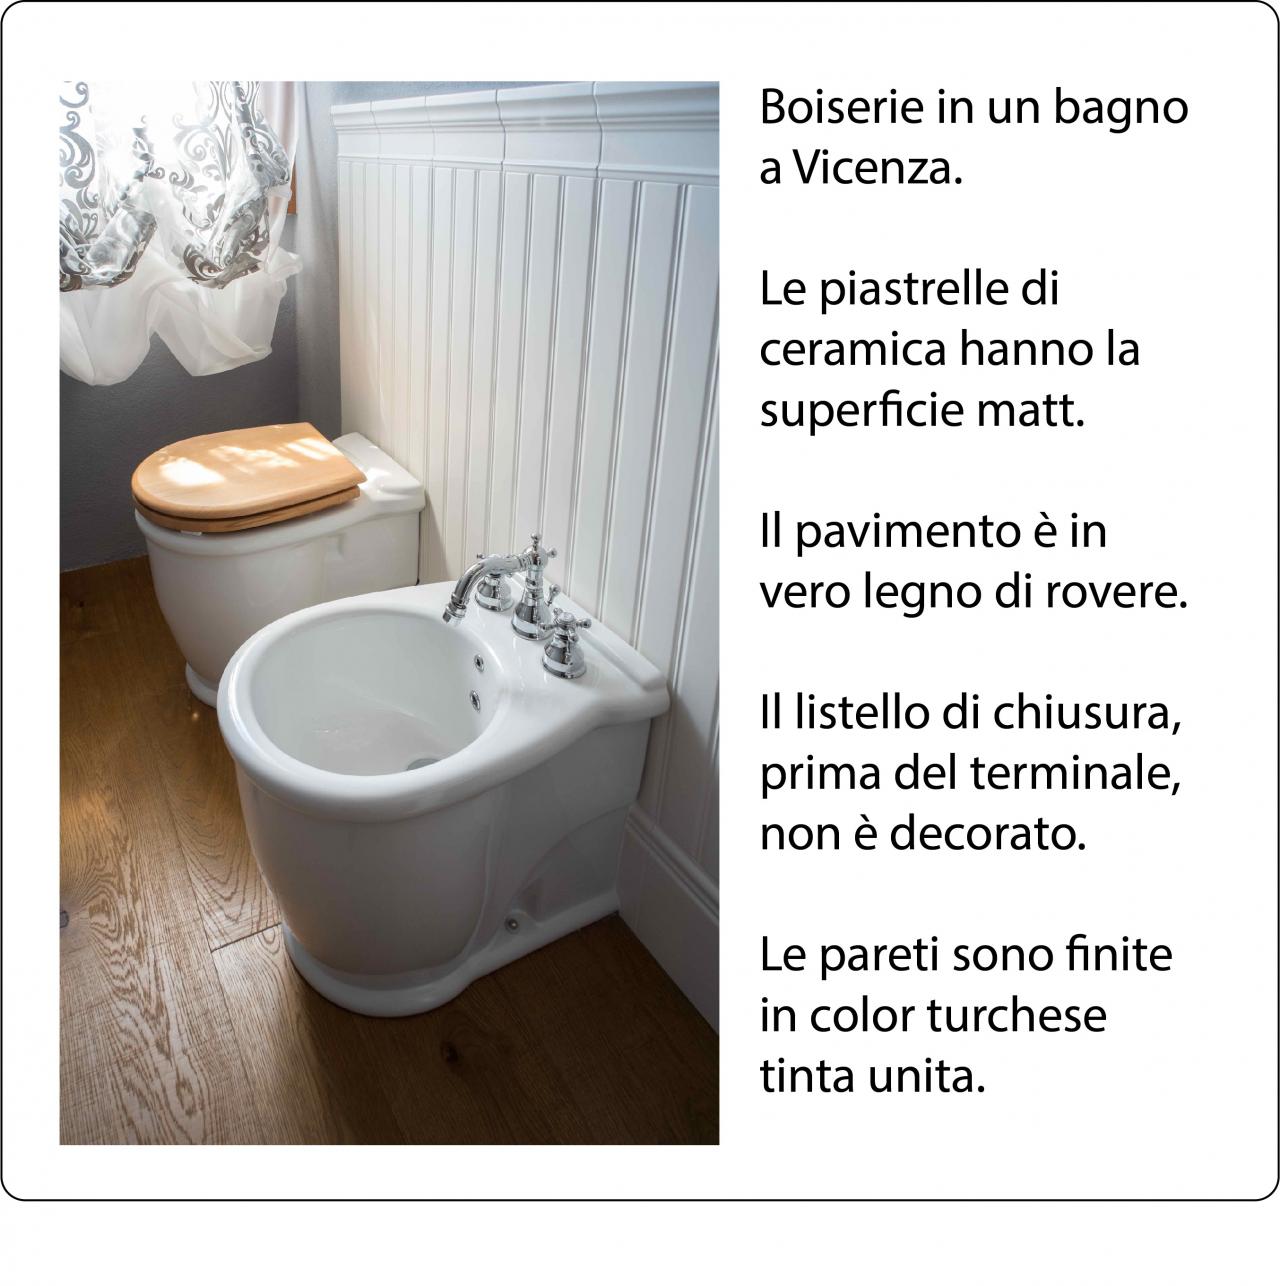 Piastrelle per una Boiserie in un bagno a Vicenza